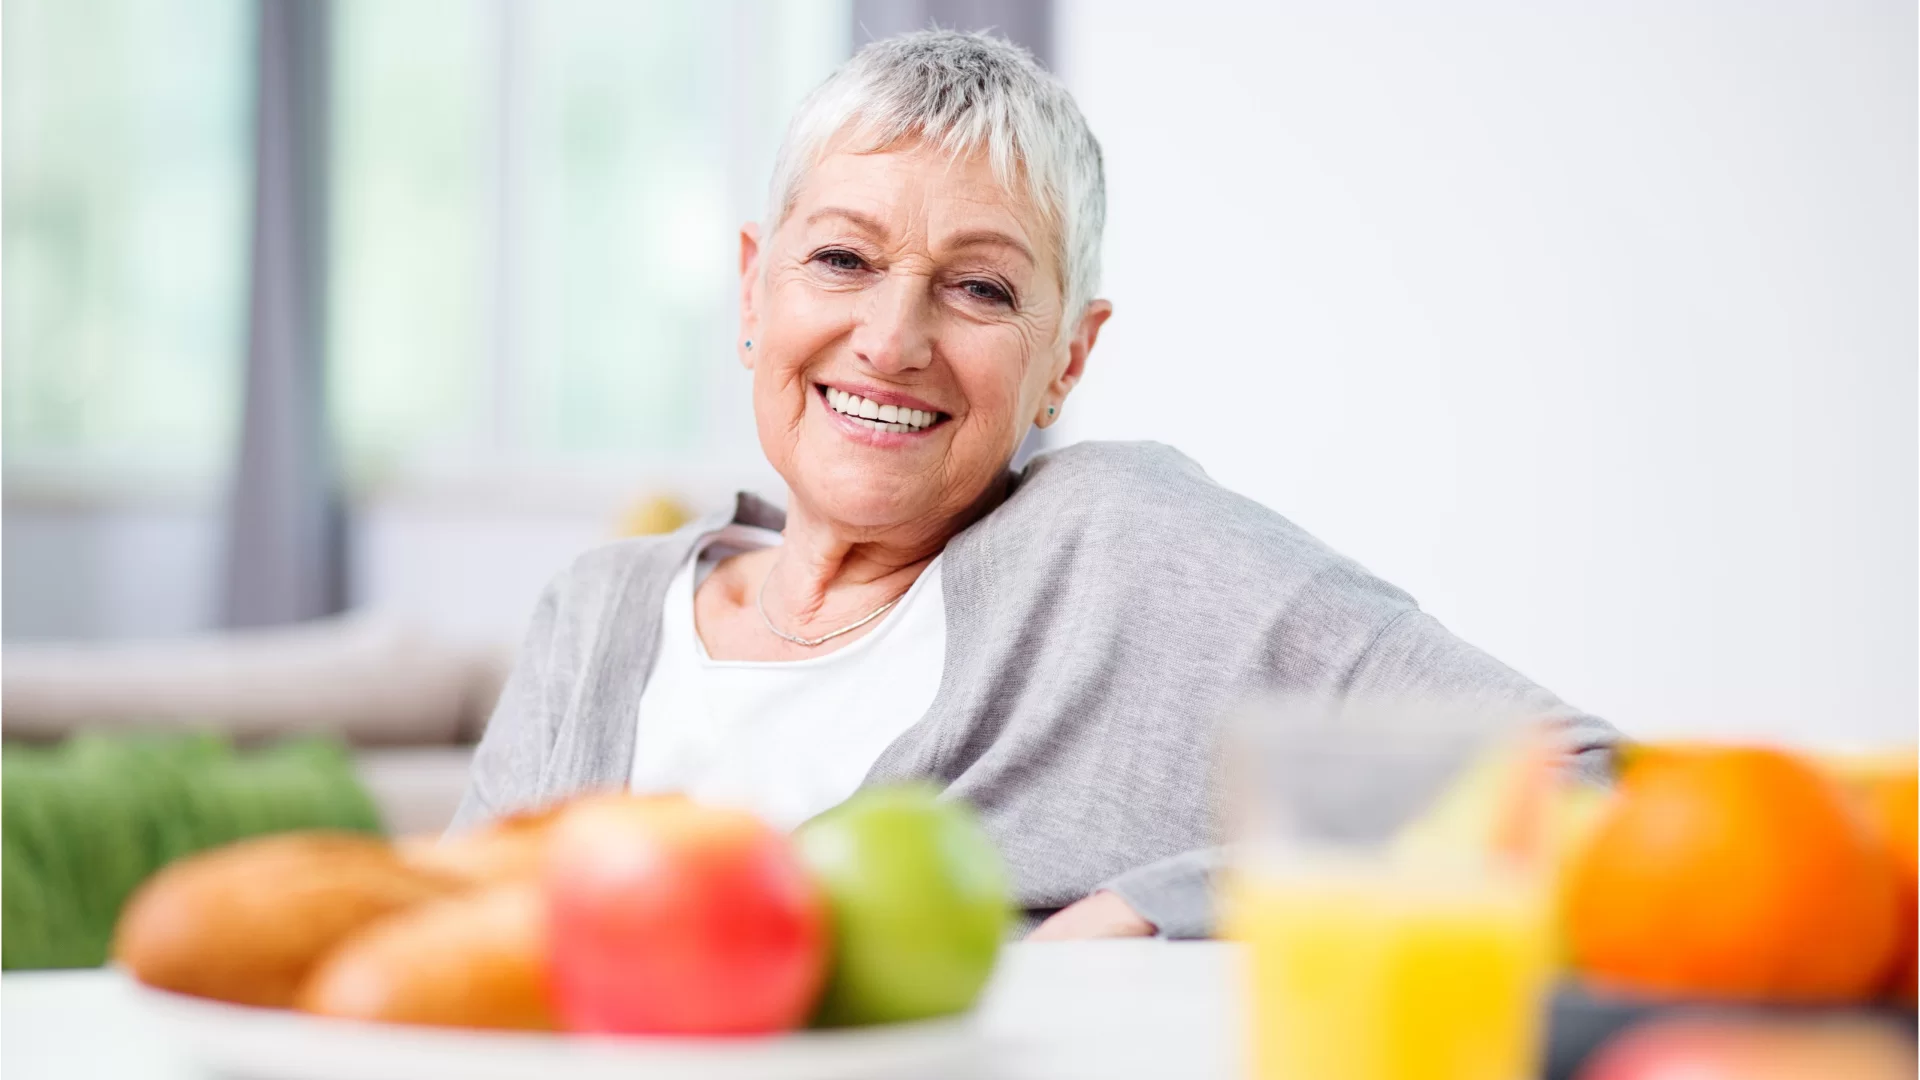 Personas mayores y alimentación: 10 consejos para comer bien y vivir mucho tiempo